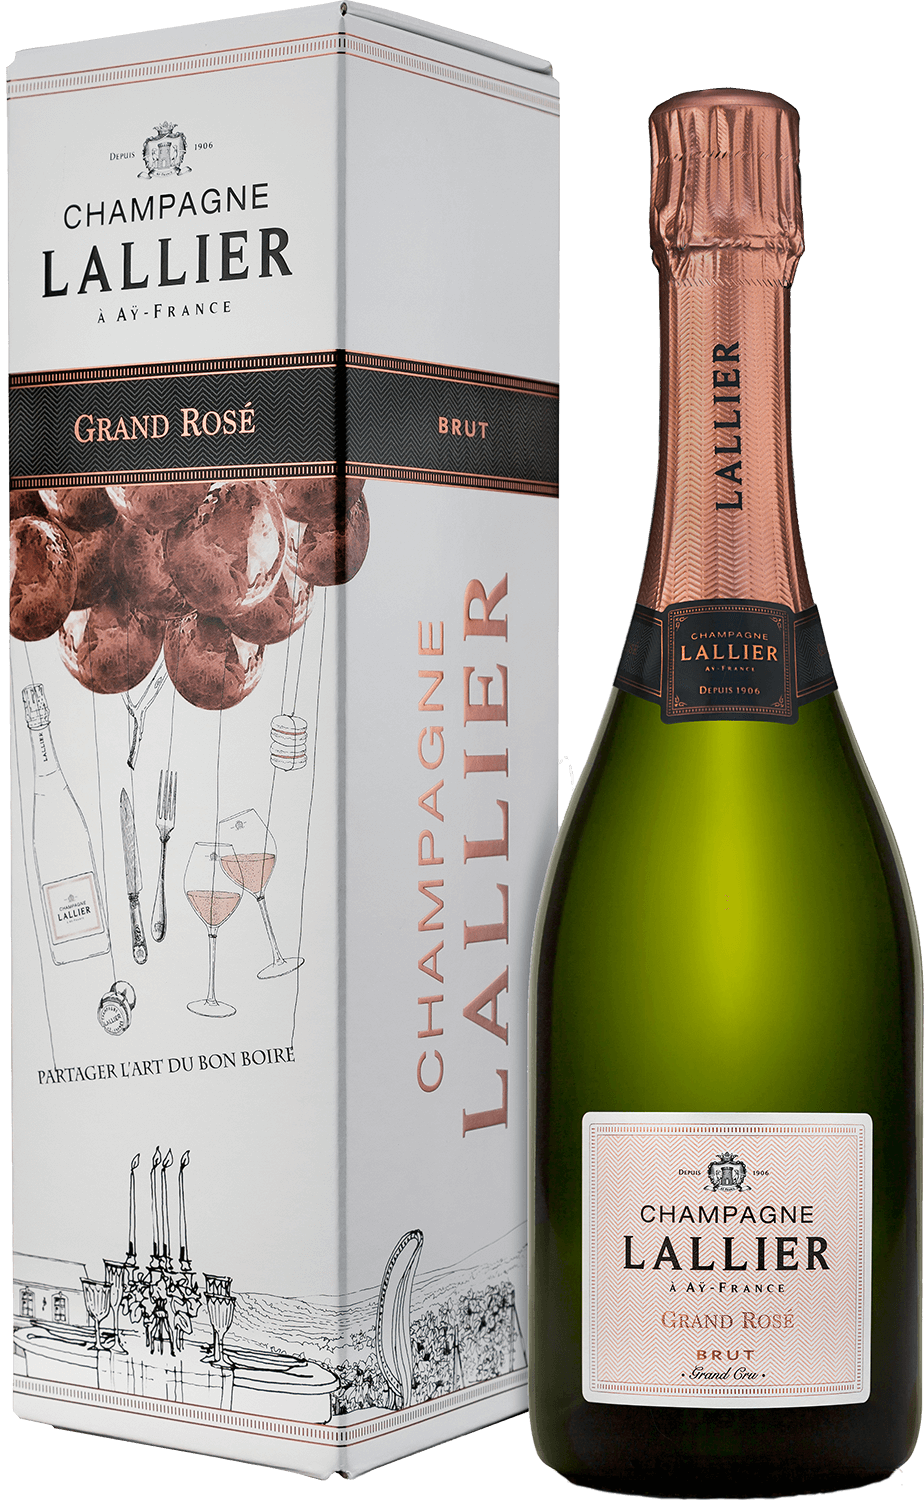 Lallier Grand Rose Brut Grand Cru Champagne AOC (gift box) vilmart cuvée rubis brut premier cru champagne aoc